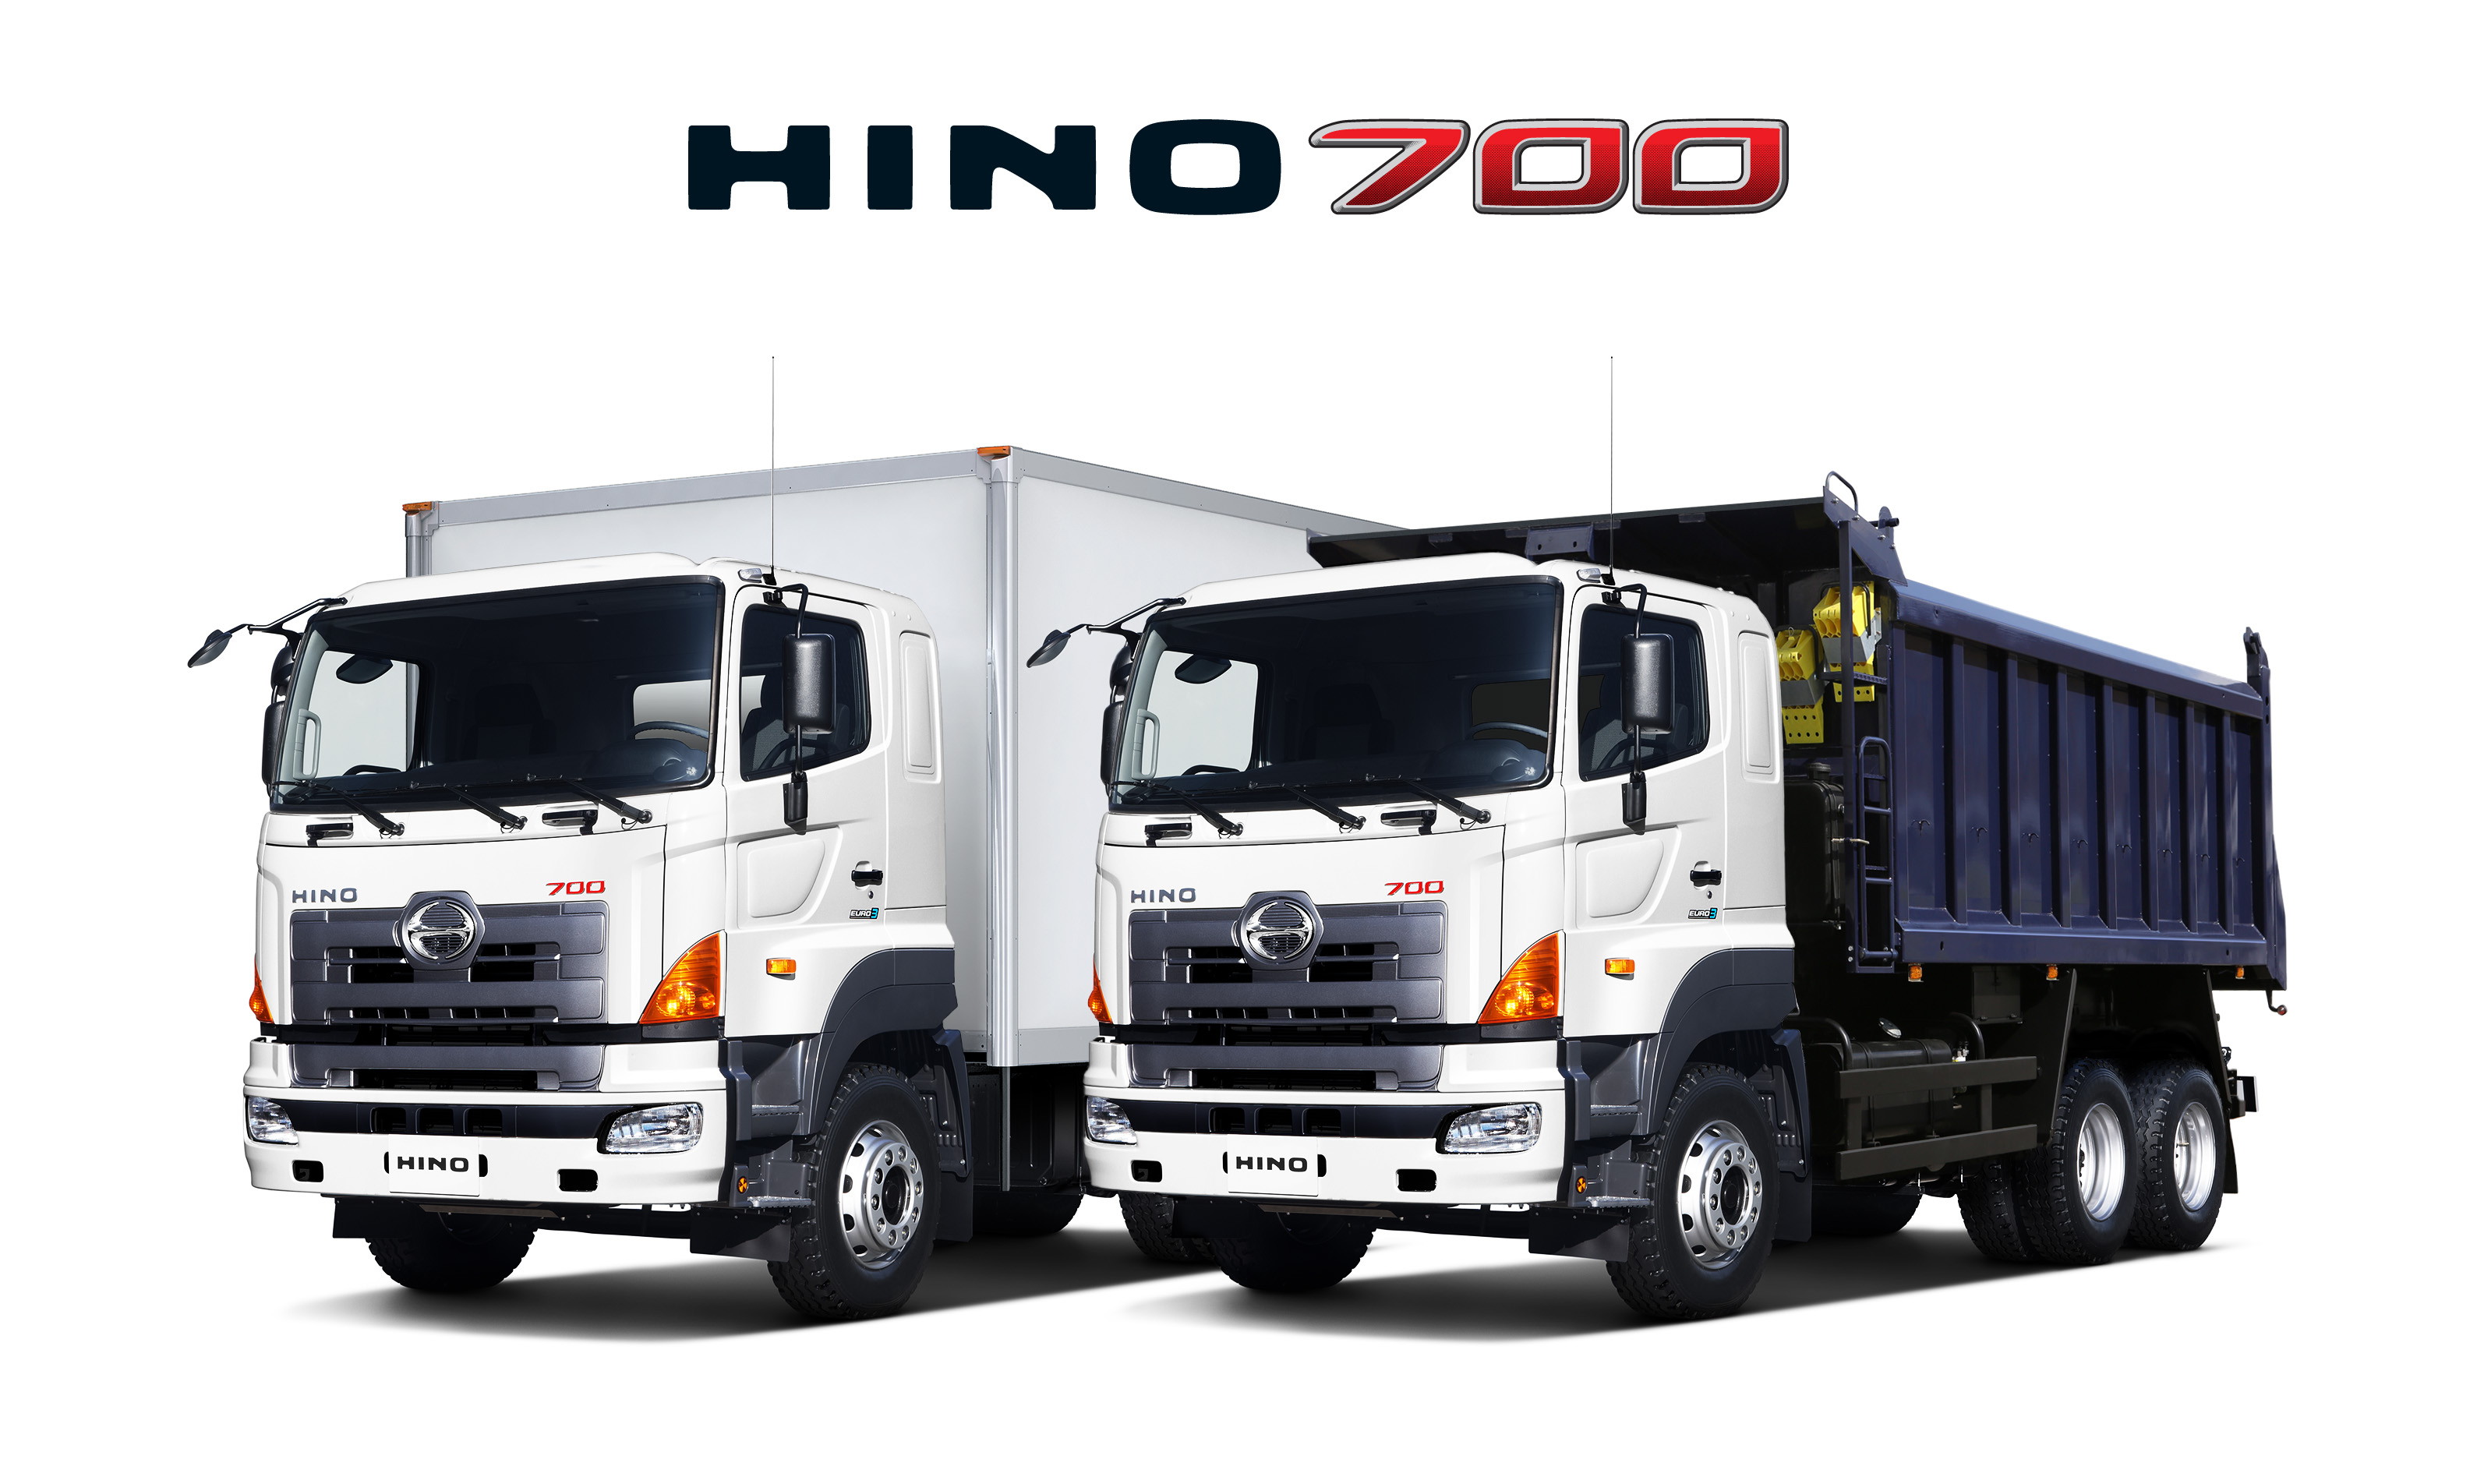 HINO 700